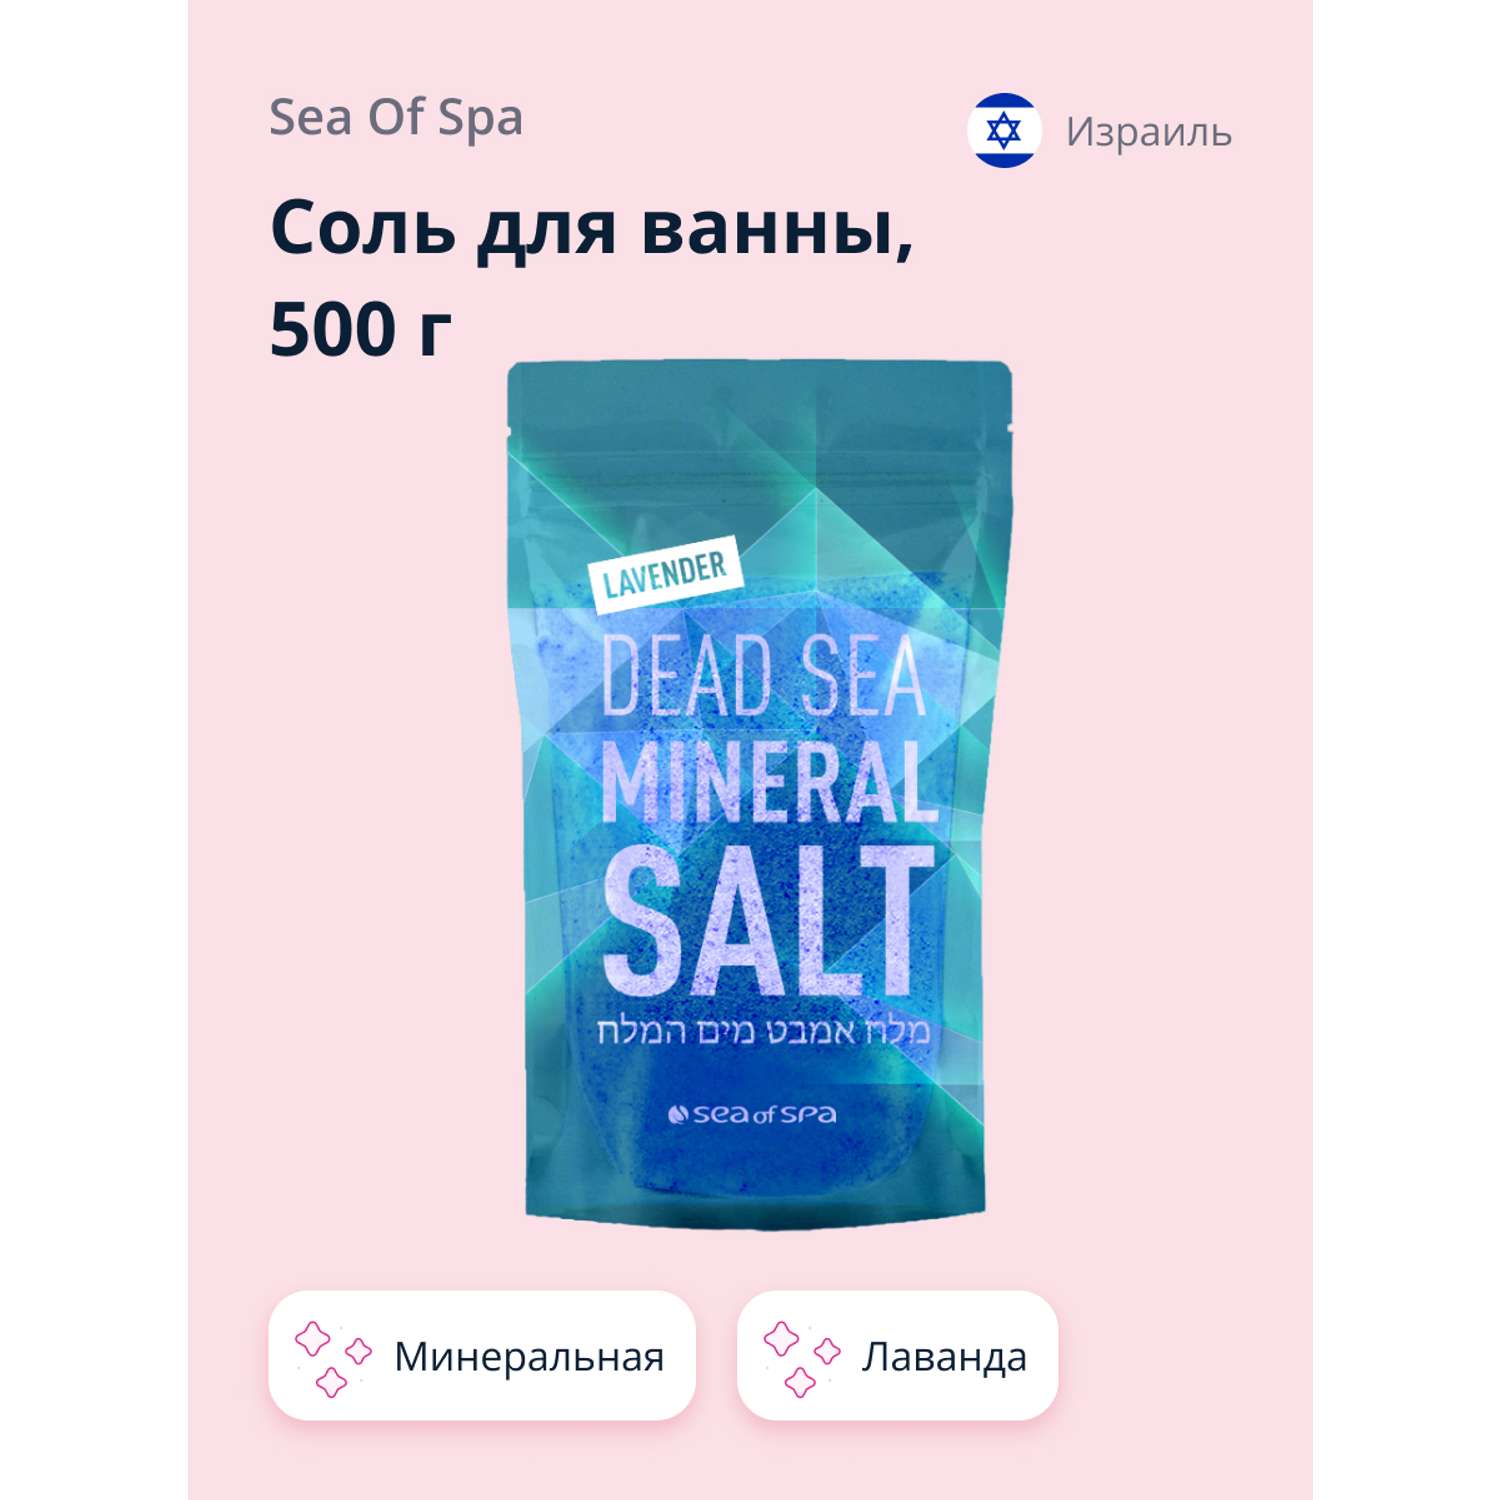 Соль для ванны Sea of Spa минеральная Мертвого моря Лаванда 500 г - фото 1